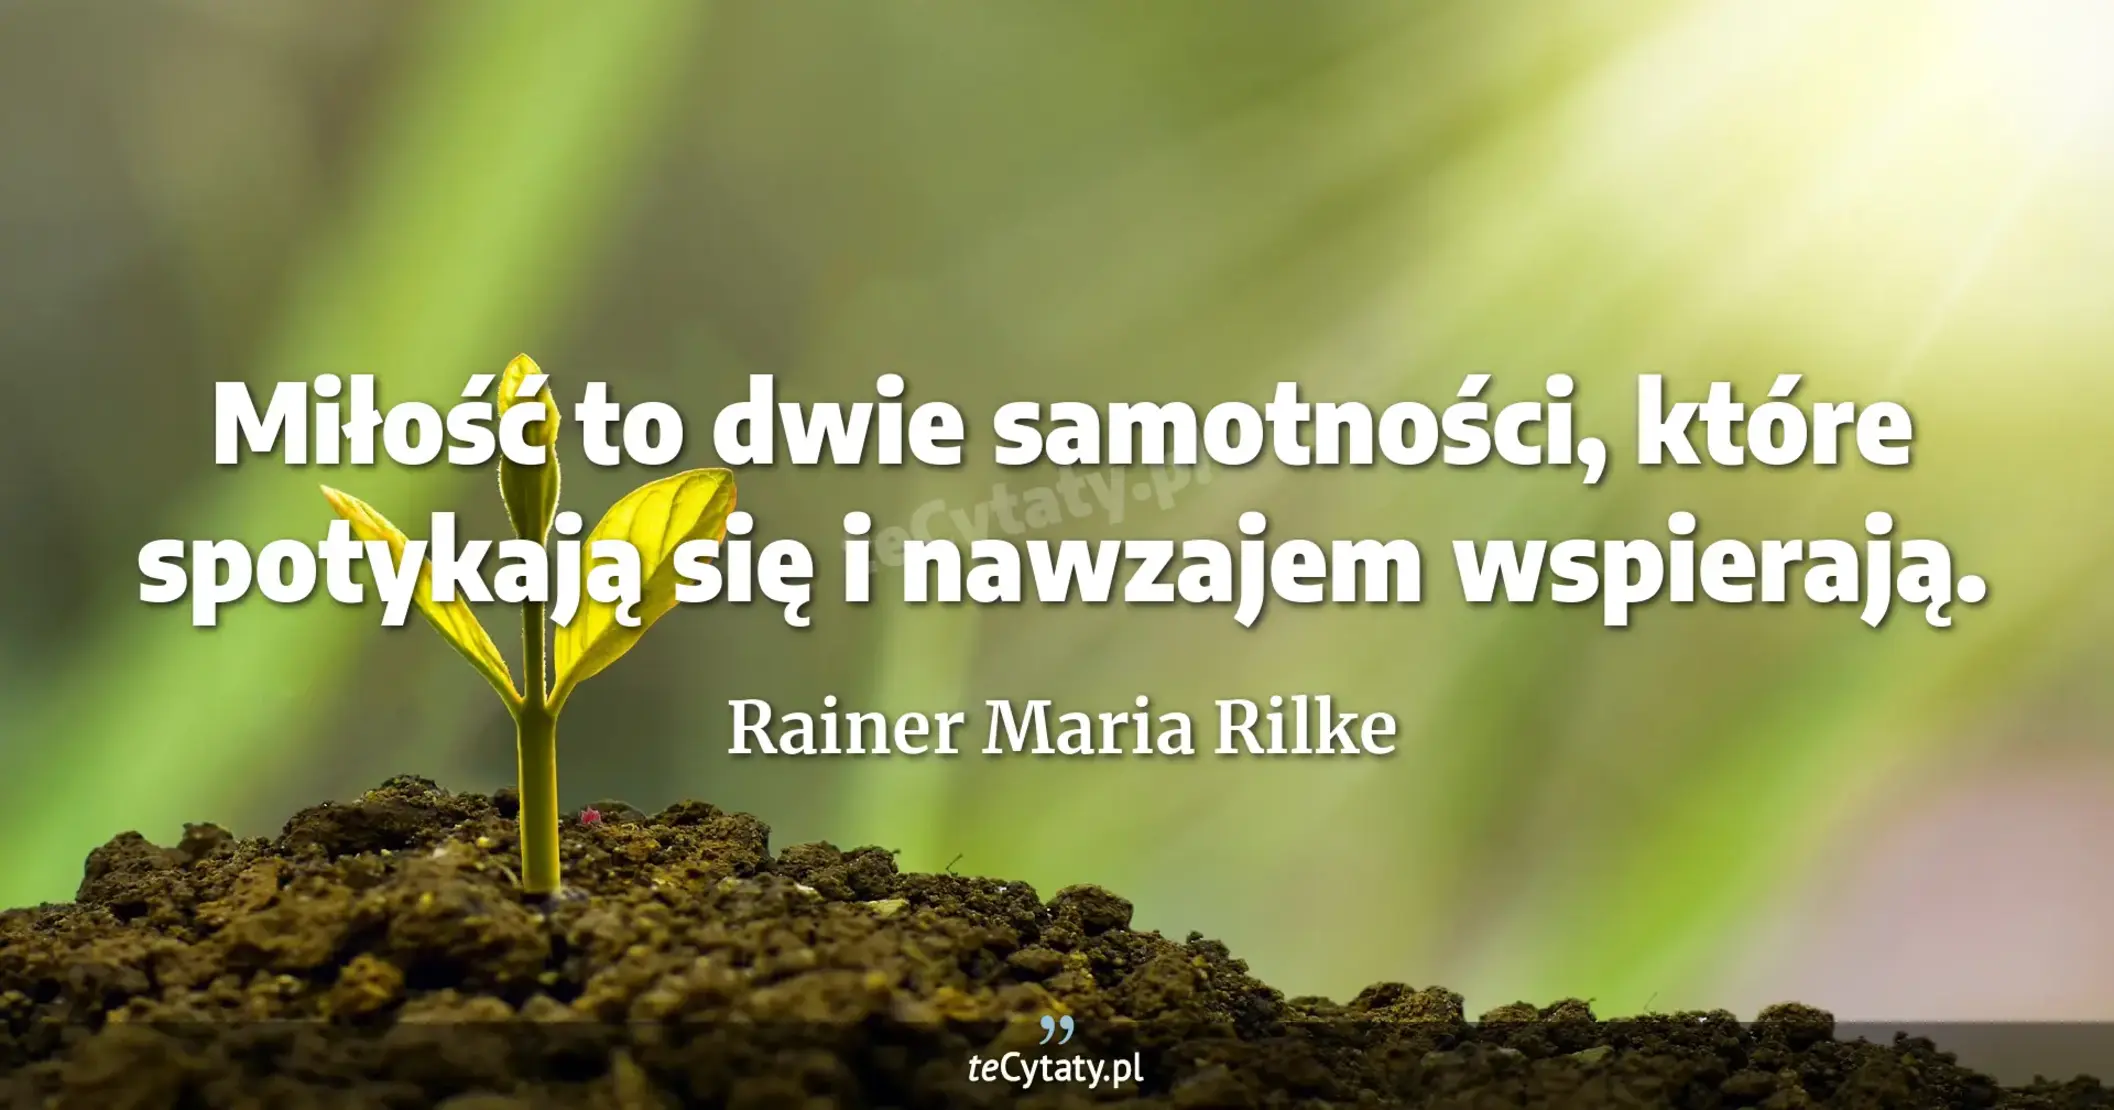 Miłość to dwie samotności, które spotykają się i nawzajem wspierają. - Rainer Maria Rilke